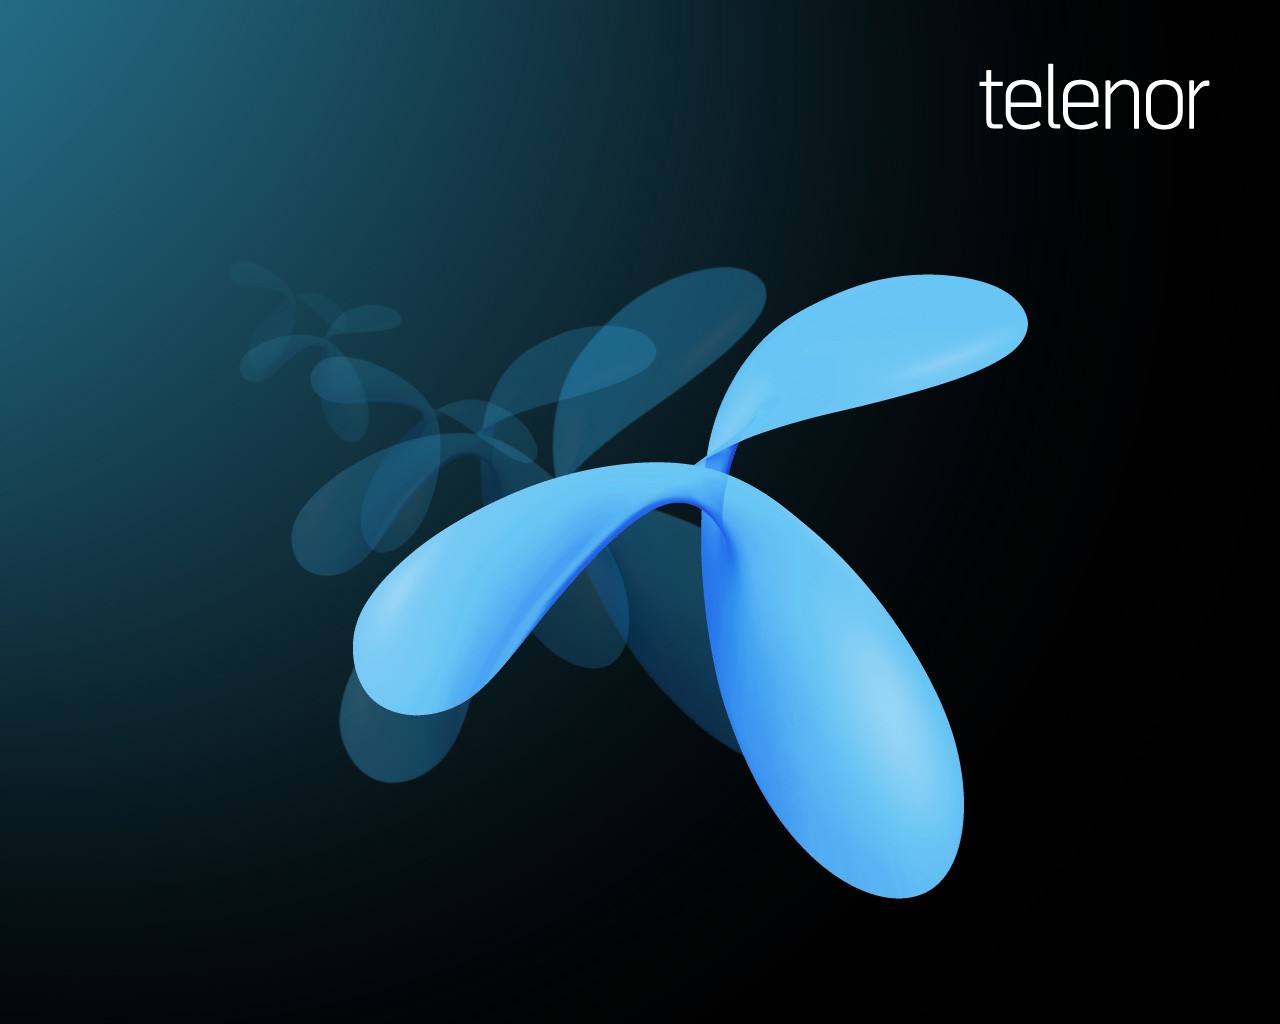 A Telenor élesben teszteli az LTE-Advanced technológiát